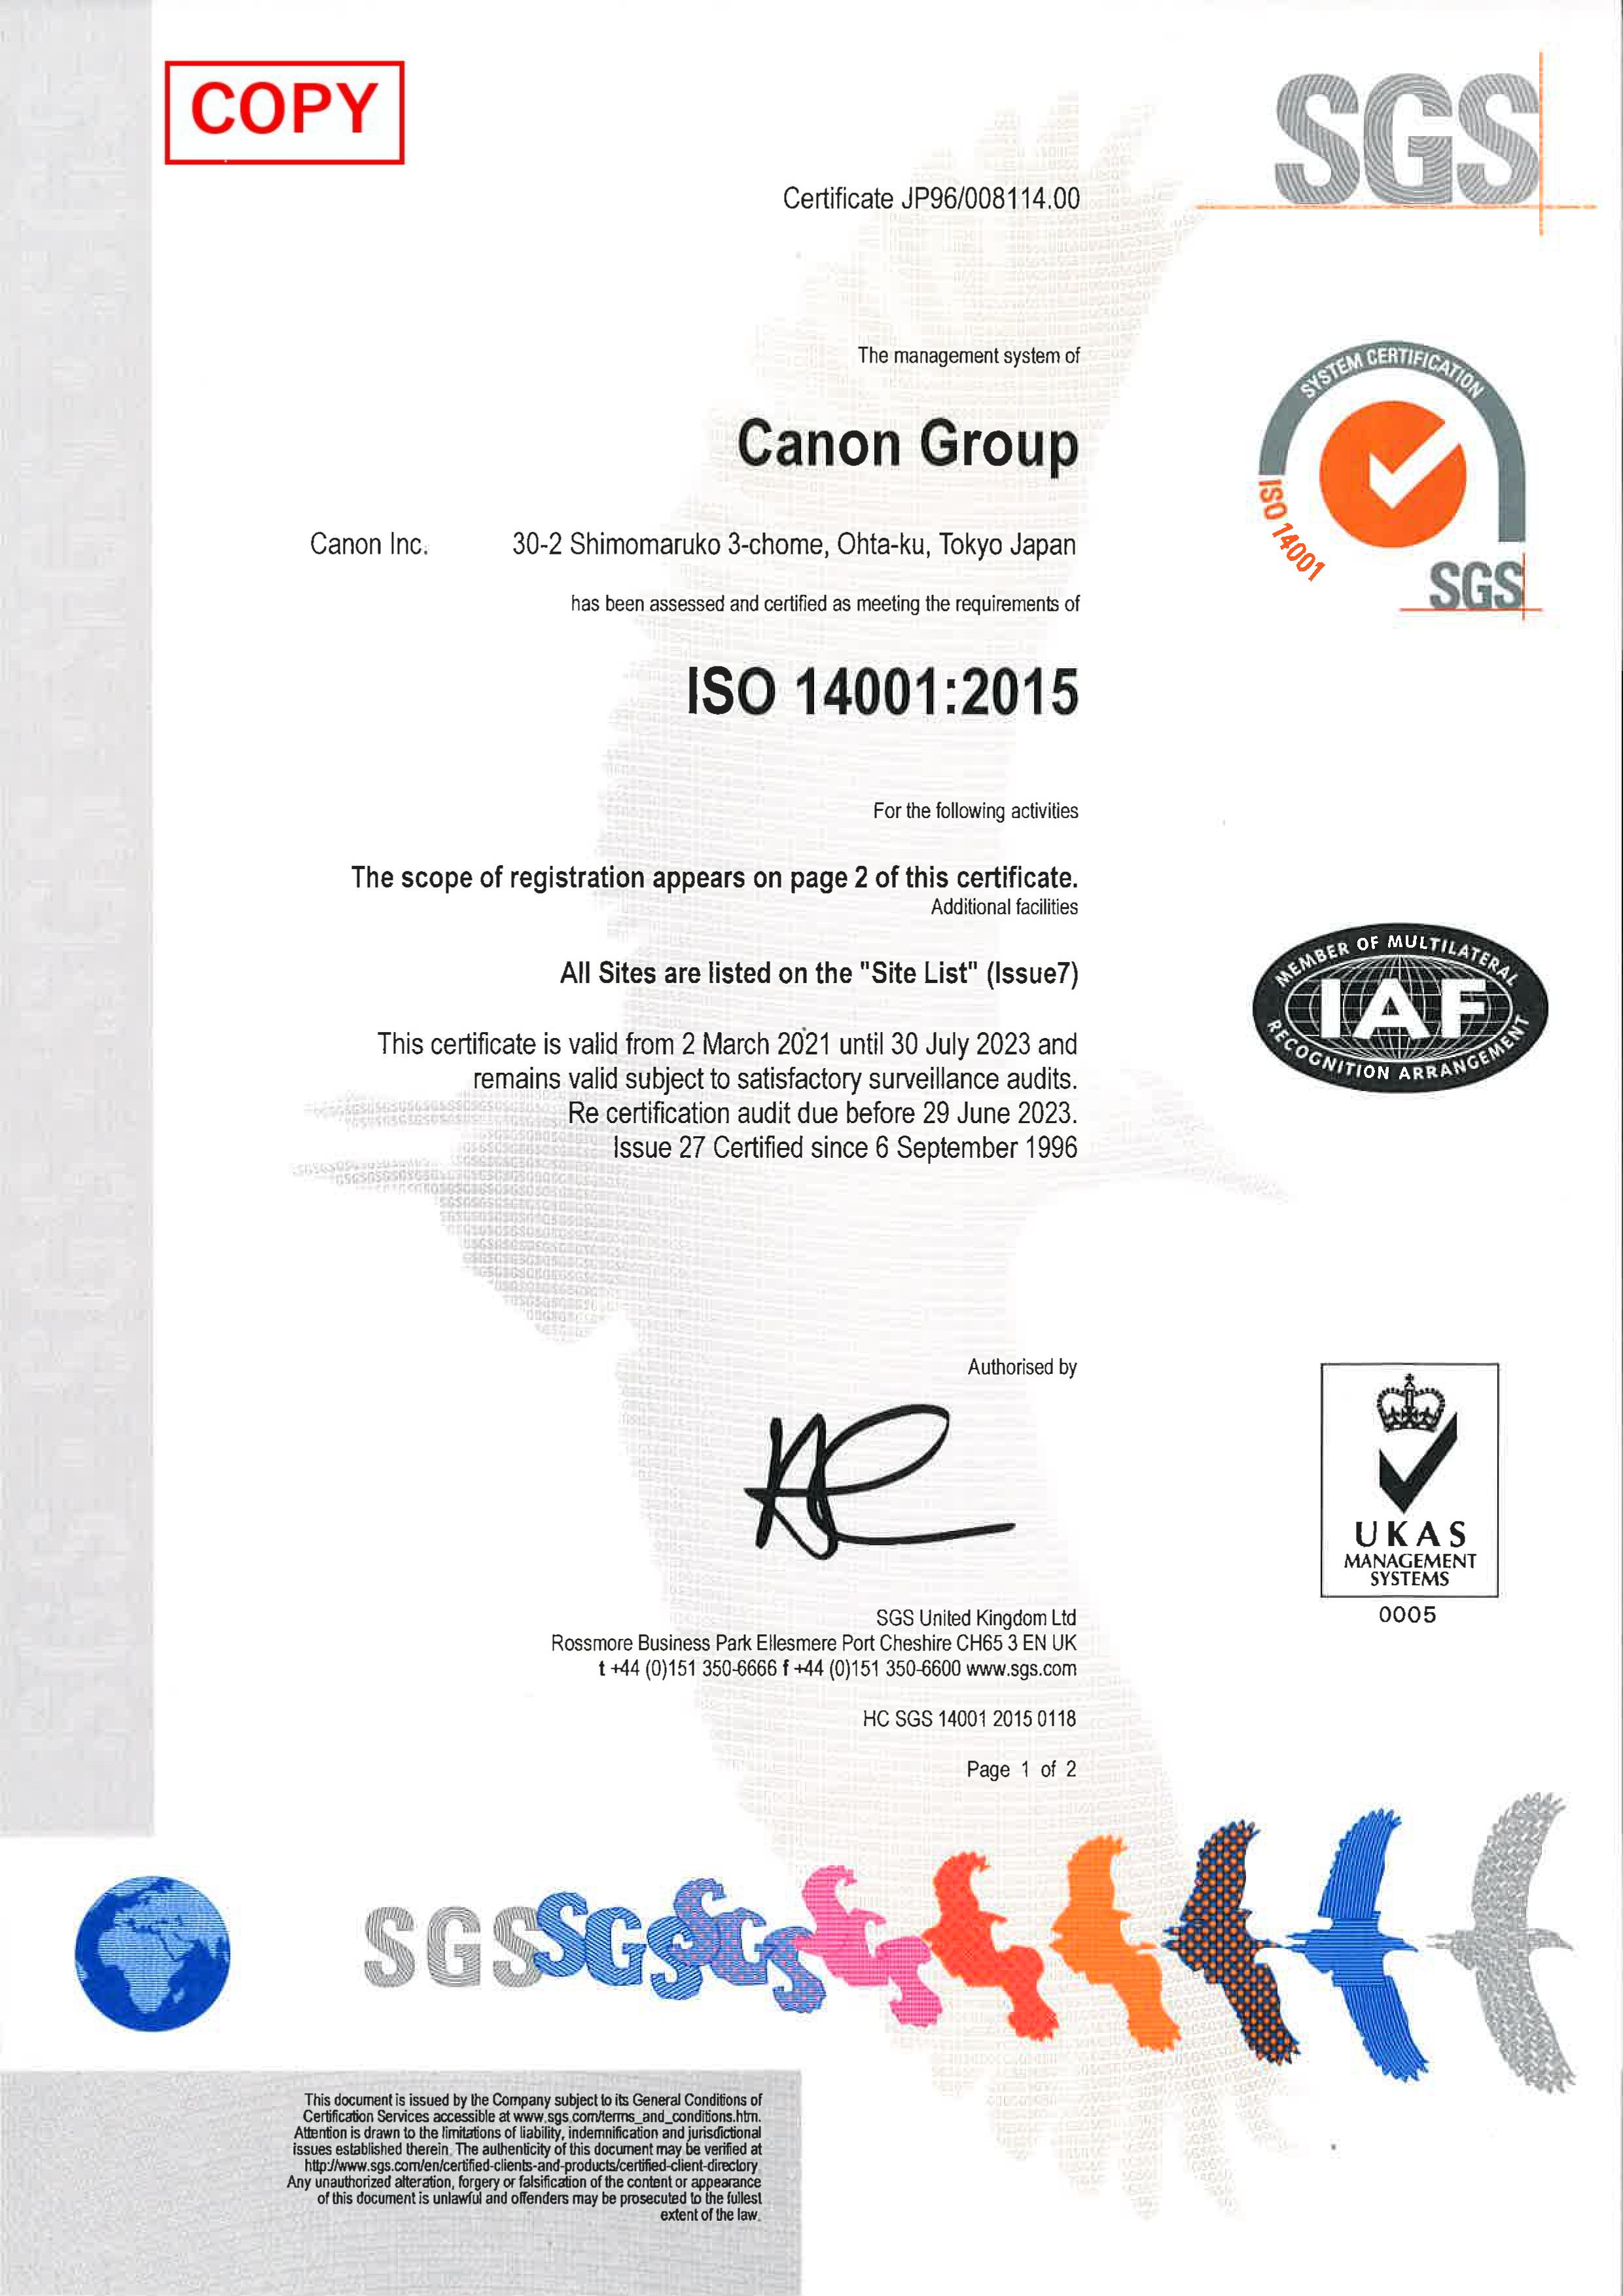 Giấy chứng nhận ISO 14001:2015